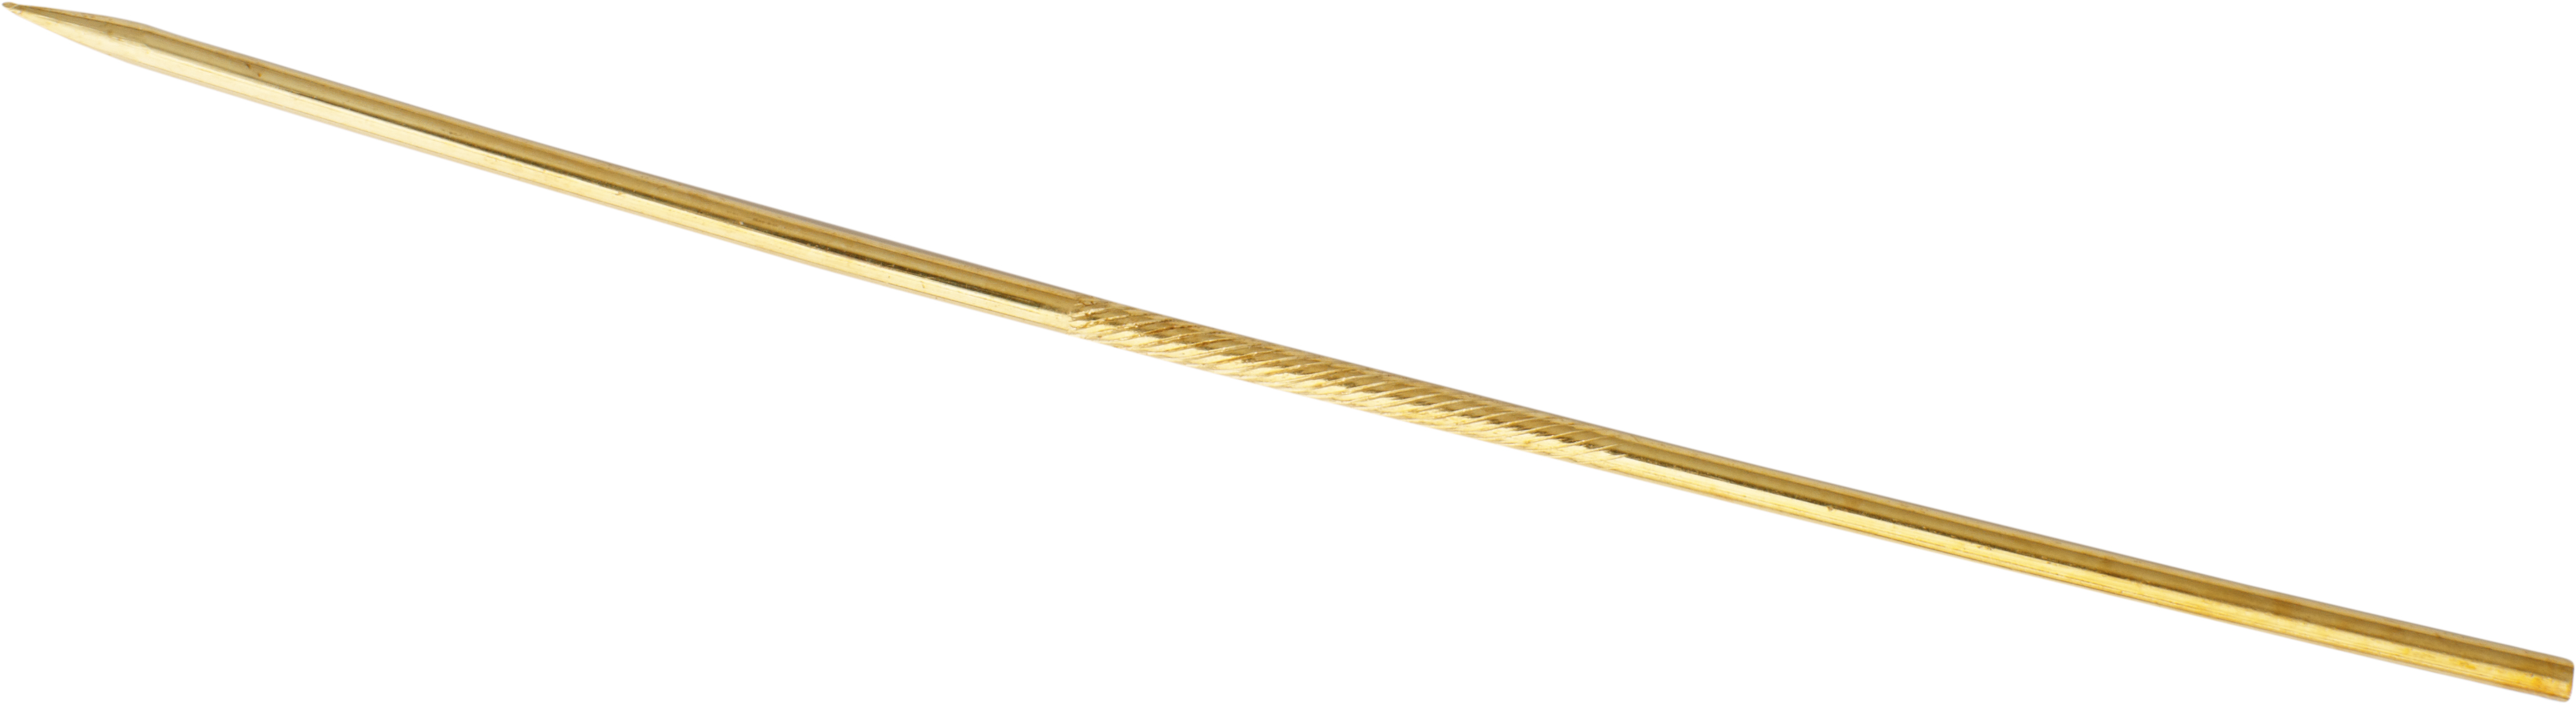 Krawattennadel Gold 750/-Gg Länge 50,00mm, gerade